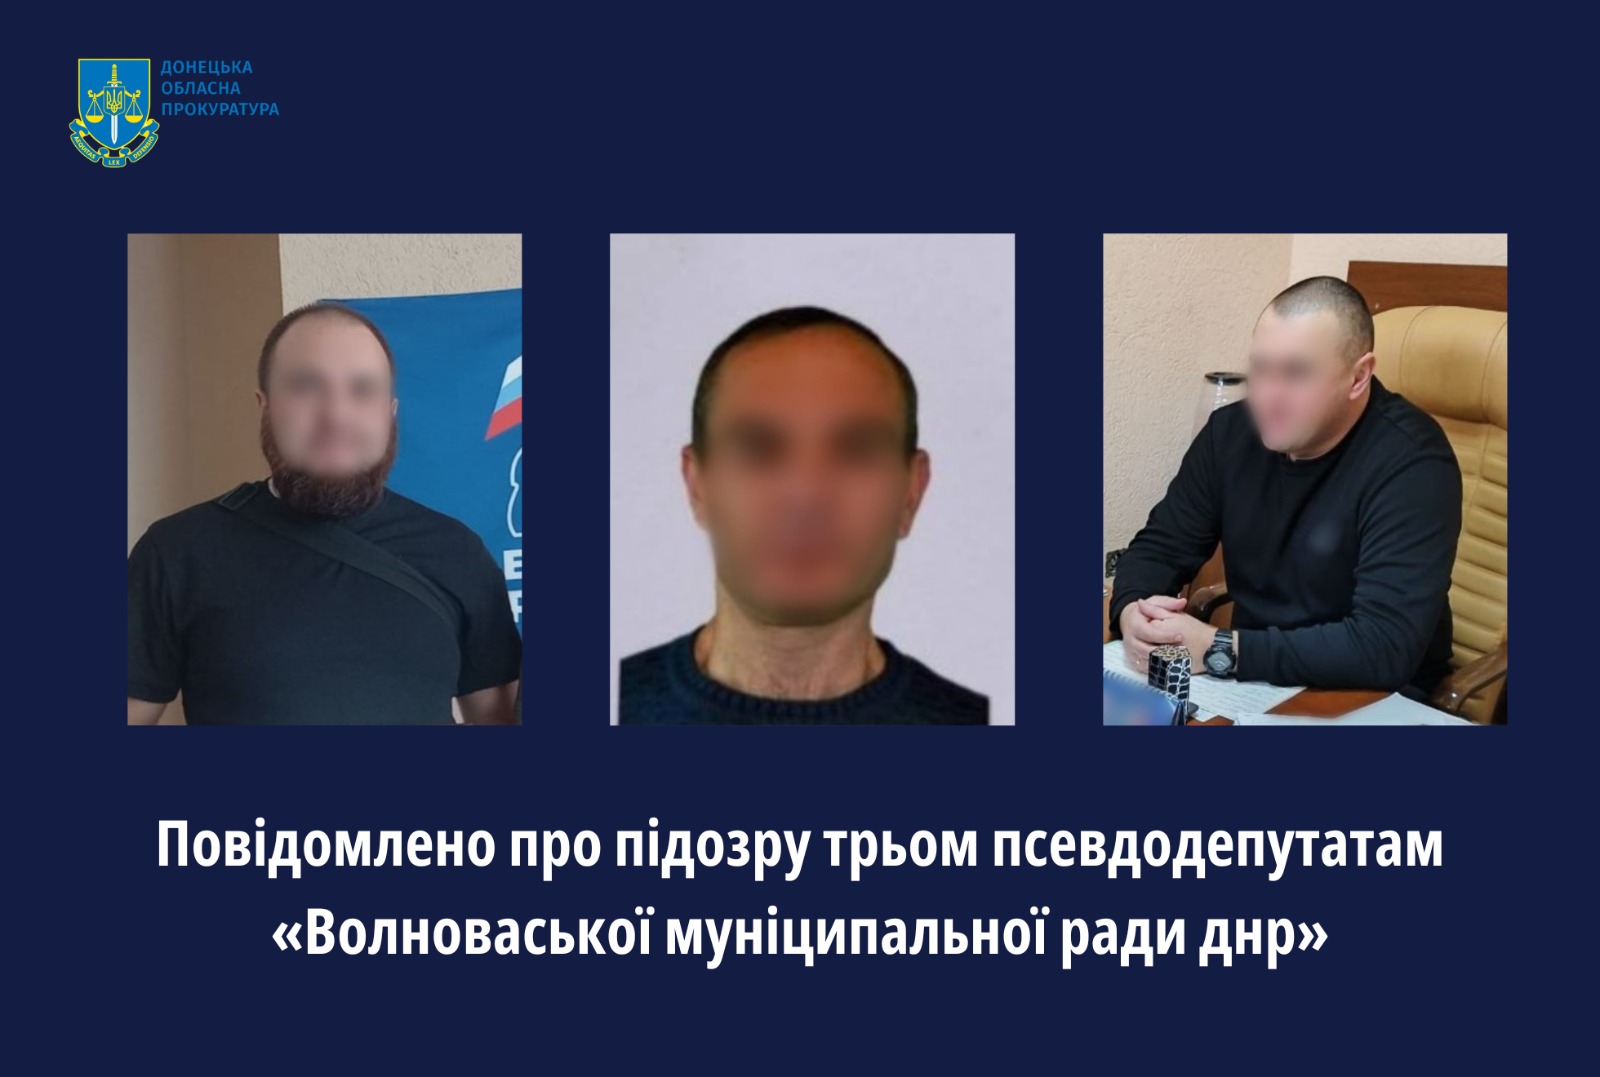 Повідомлено про підозру трьом псевдодепутатам «Волноваської муніципальної ради днр»